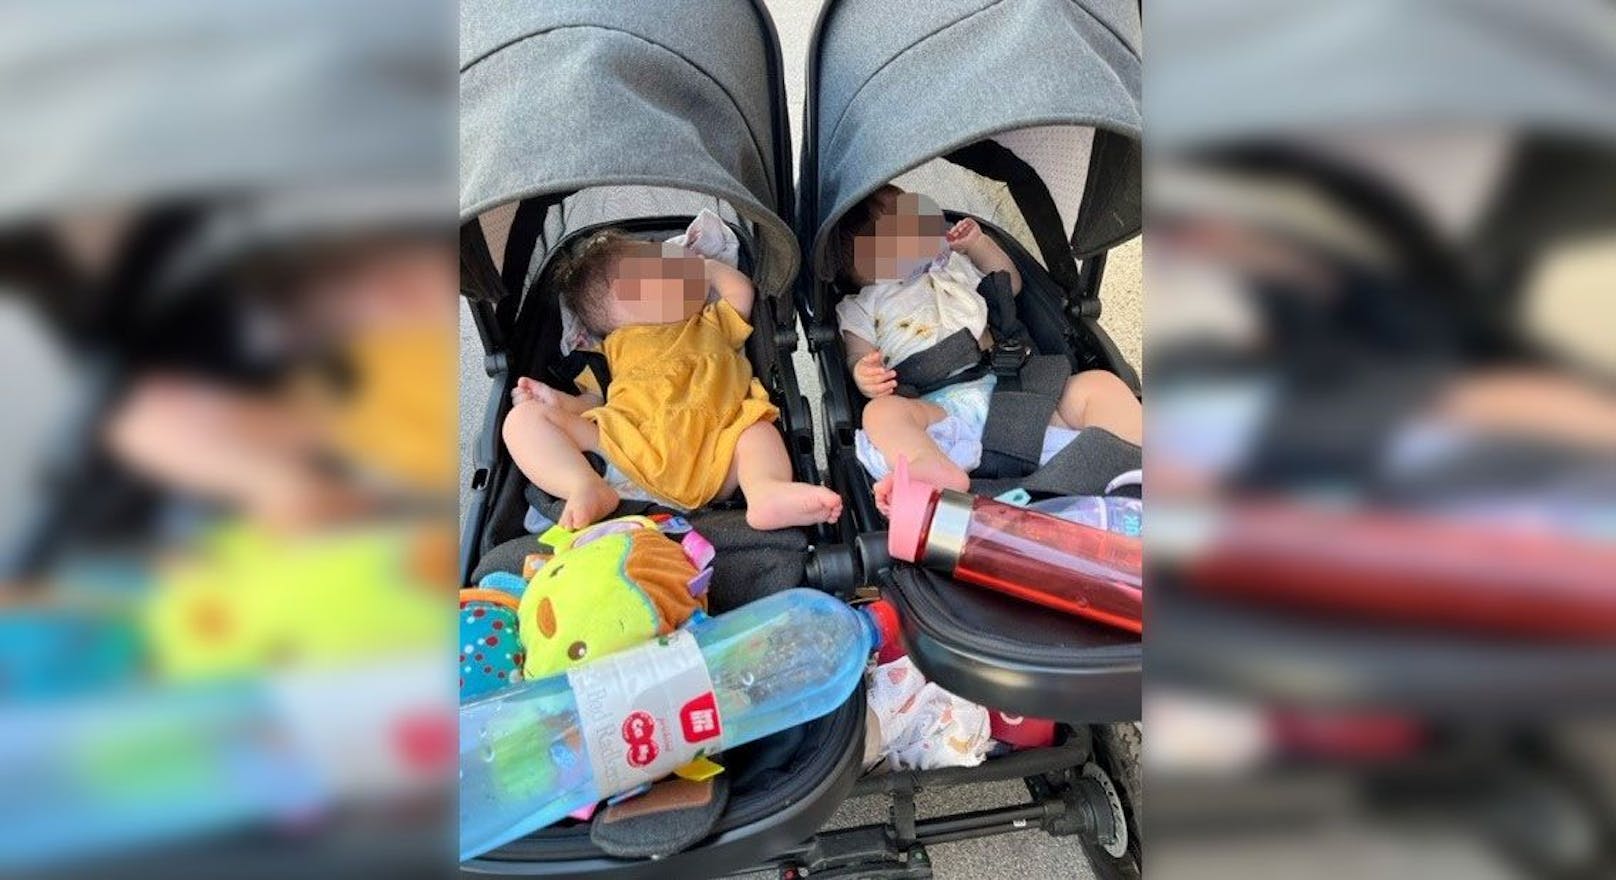 Hasans Zwillinge im Kinderwagen